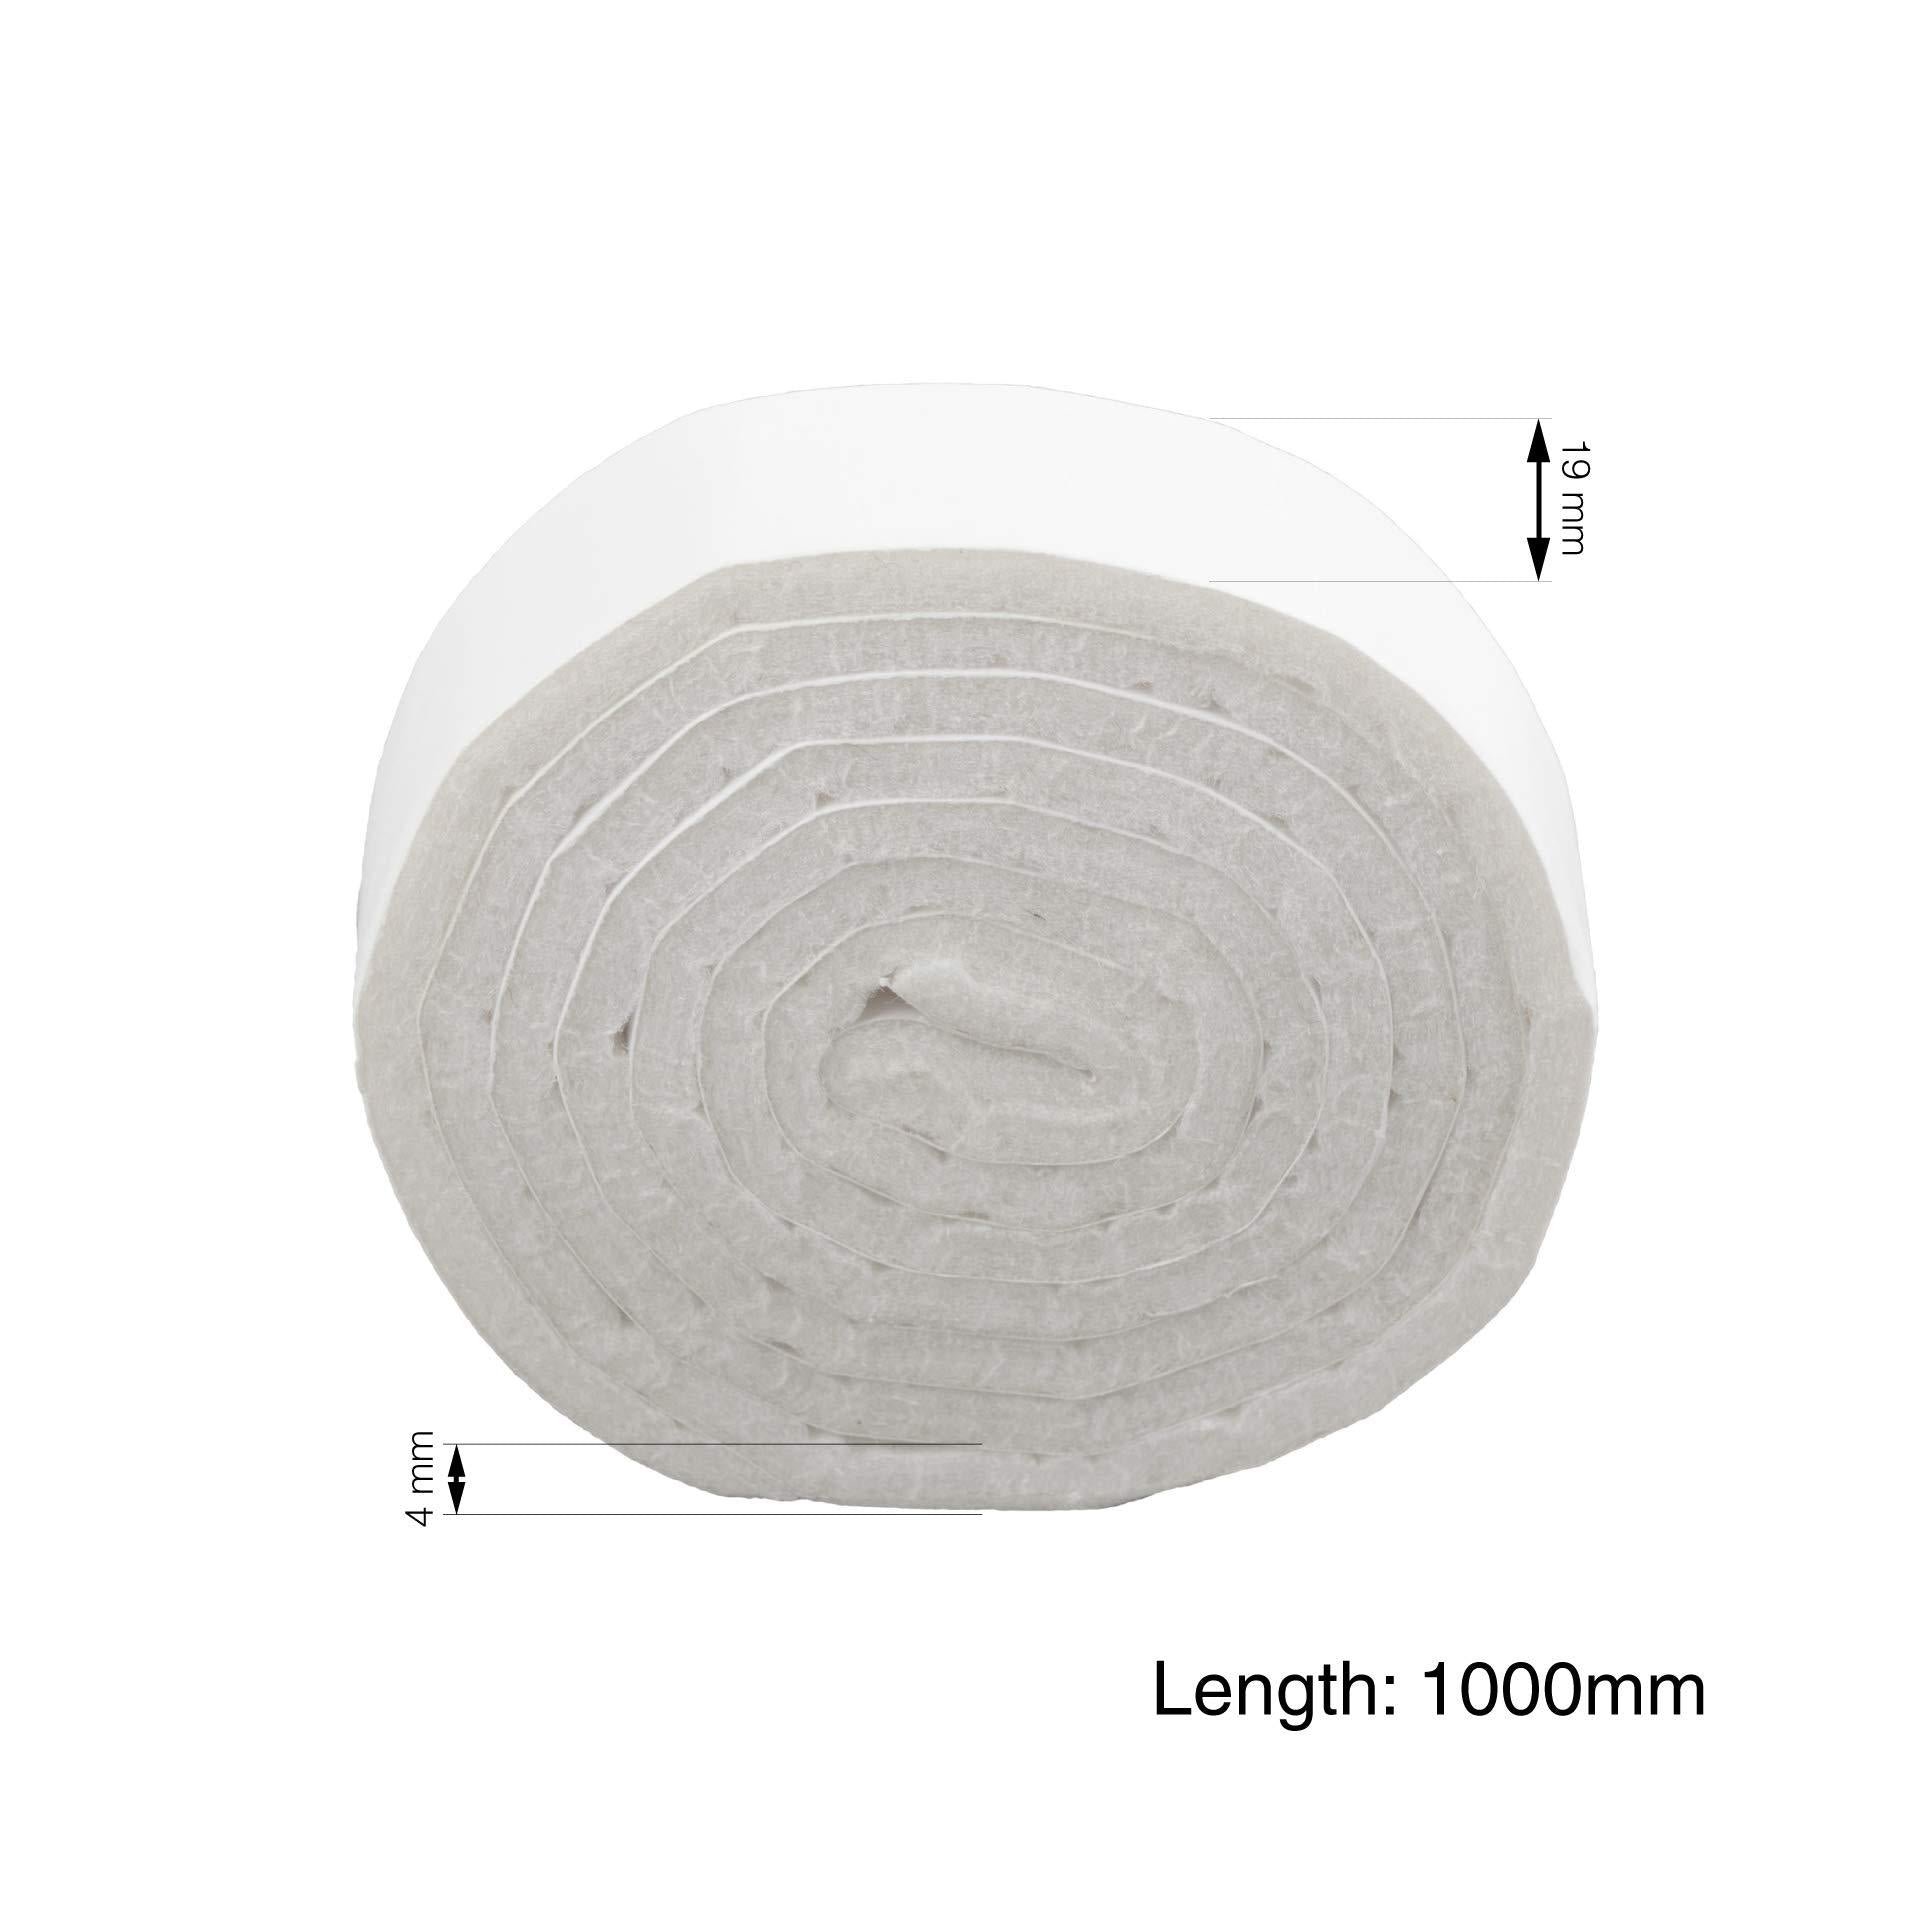 LouMaxx Filzband - Filz selbstklebend 19x1000 mm, 2 er Set weiß – Filzband selbstklebend - Klebefilz Filzrolle - Selbstklebender Filz